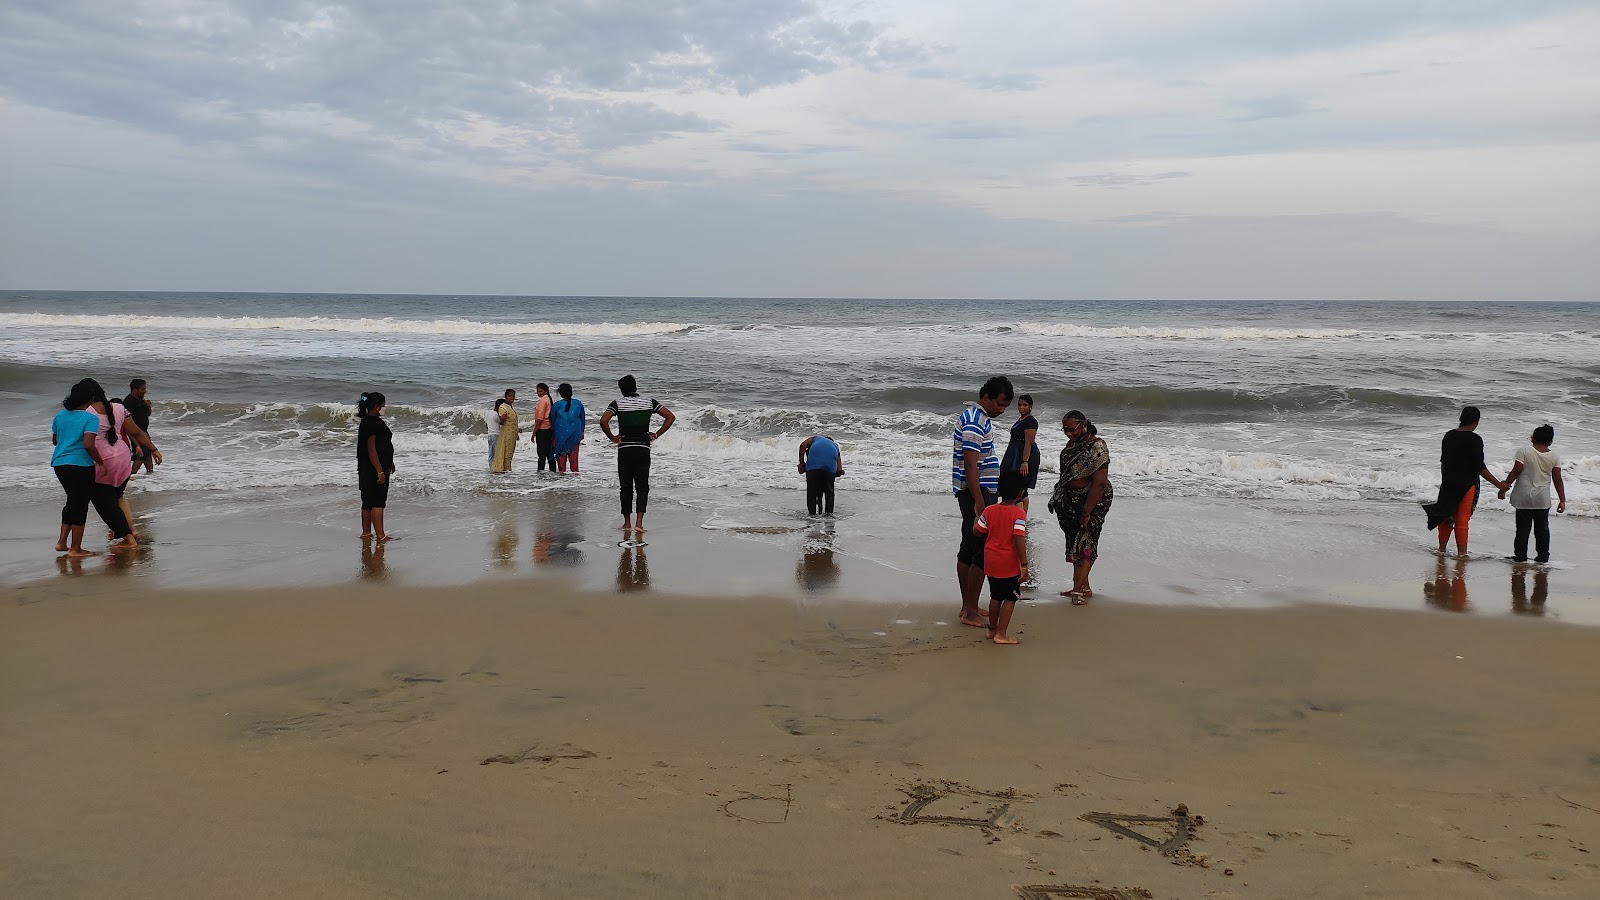 Panaiyur Beach ECR的照片 和解